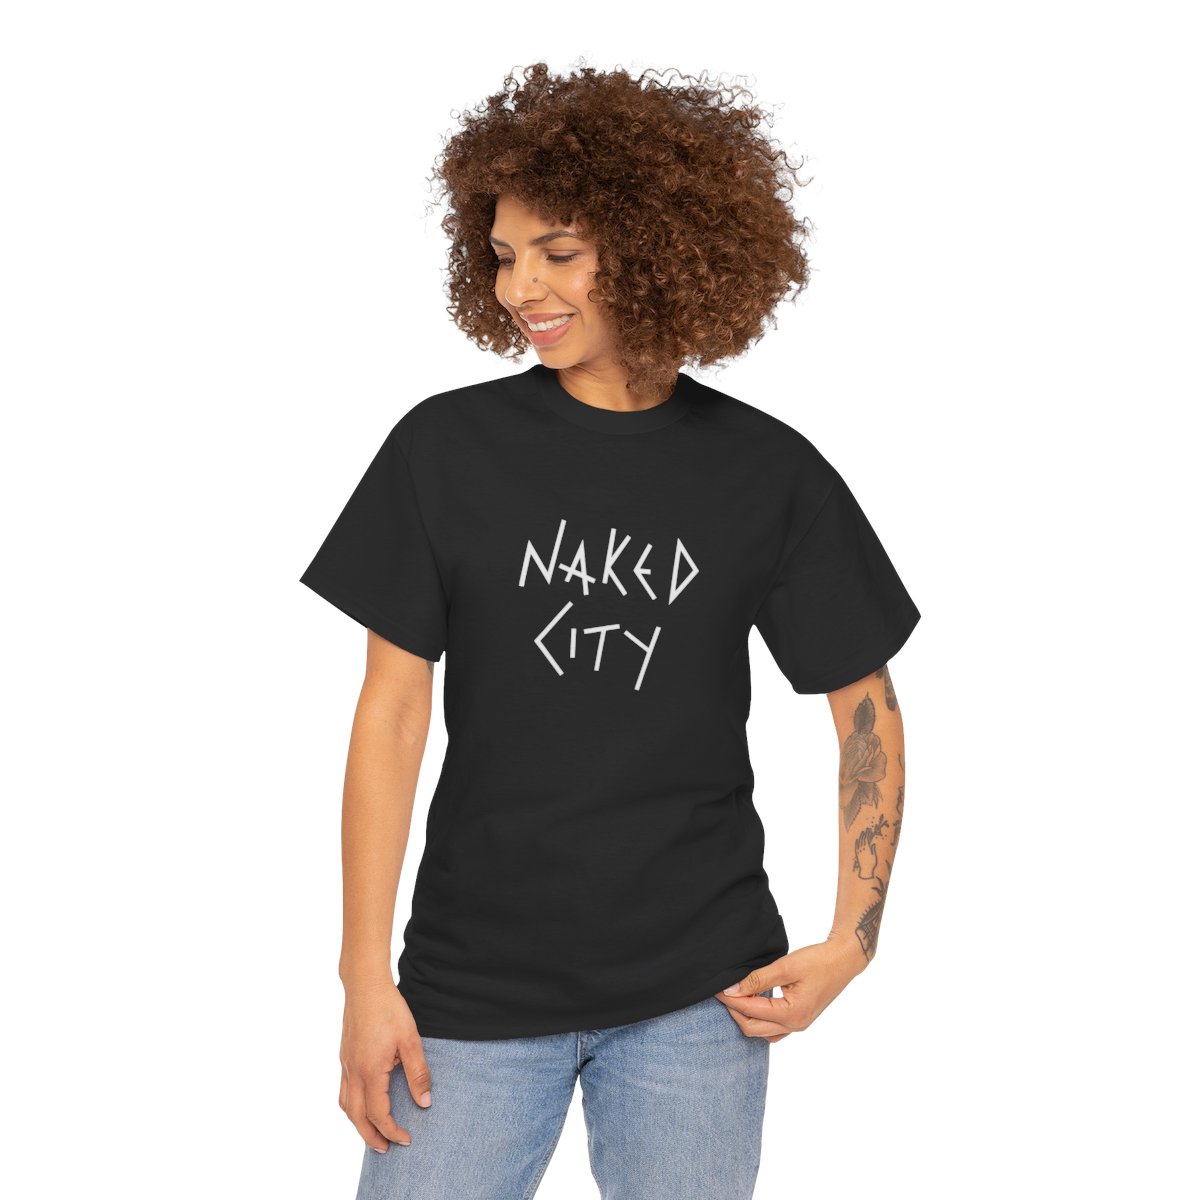 Naked City DARK T-Shirt product thumbnail image